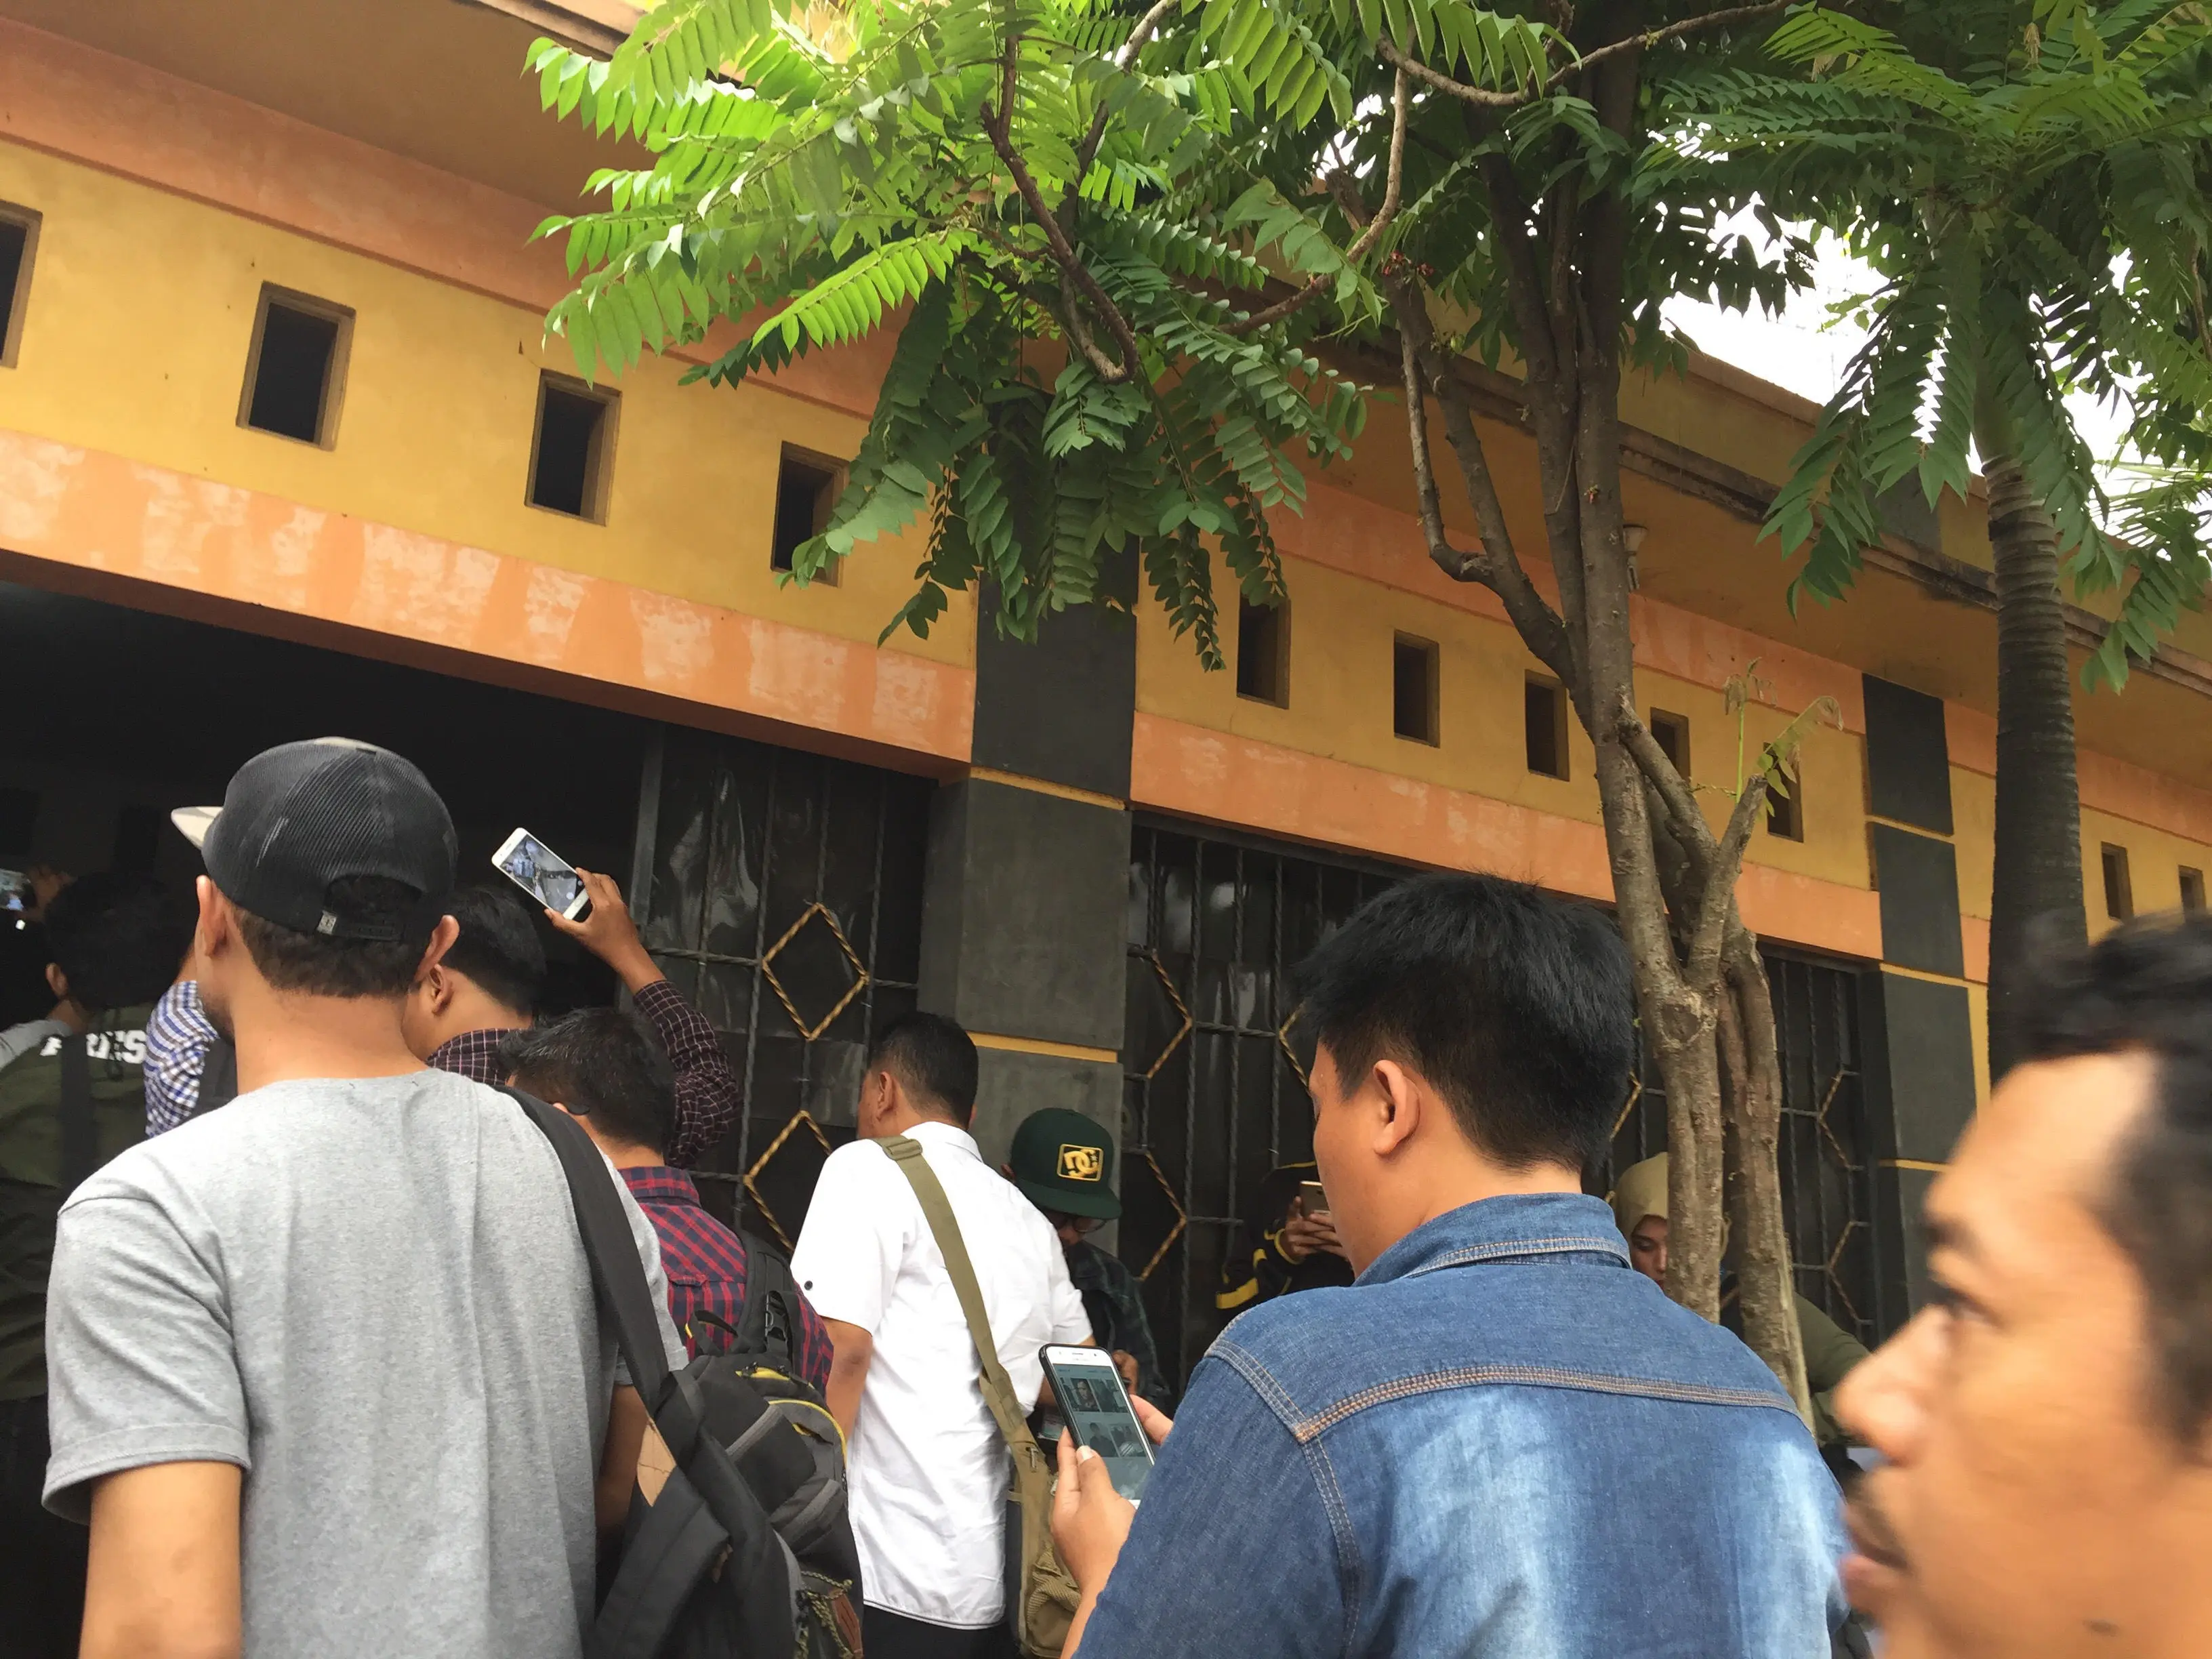 Pansus Angket KPK menyambangi safe house KPK (Liputan6.com/ Devira Prastiwi)